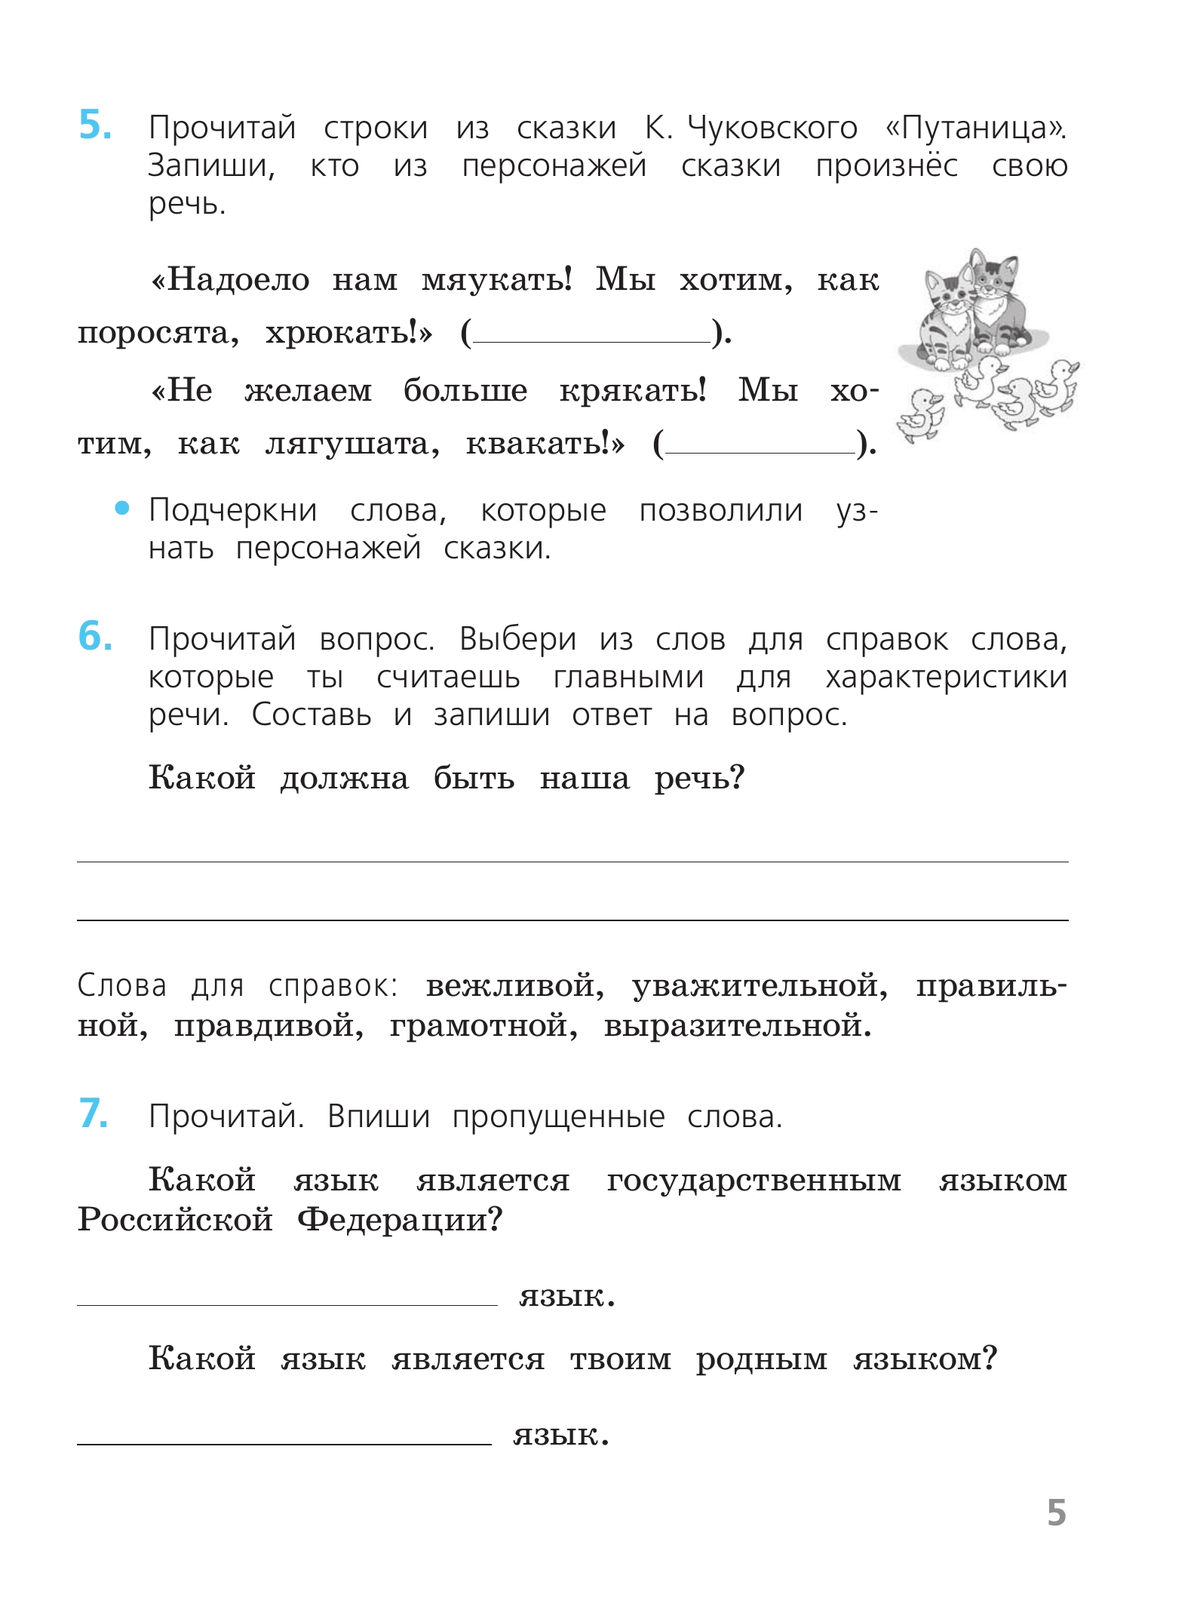 Русский язык. Проверочные работы. 2 класс 5